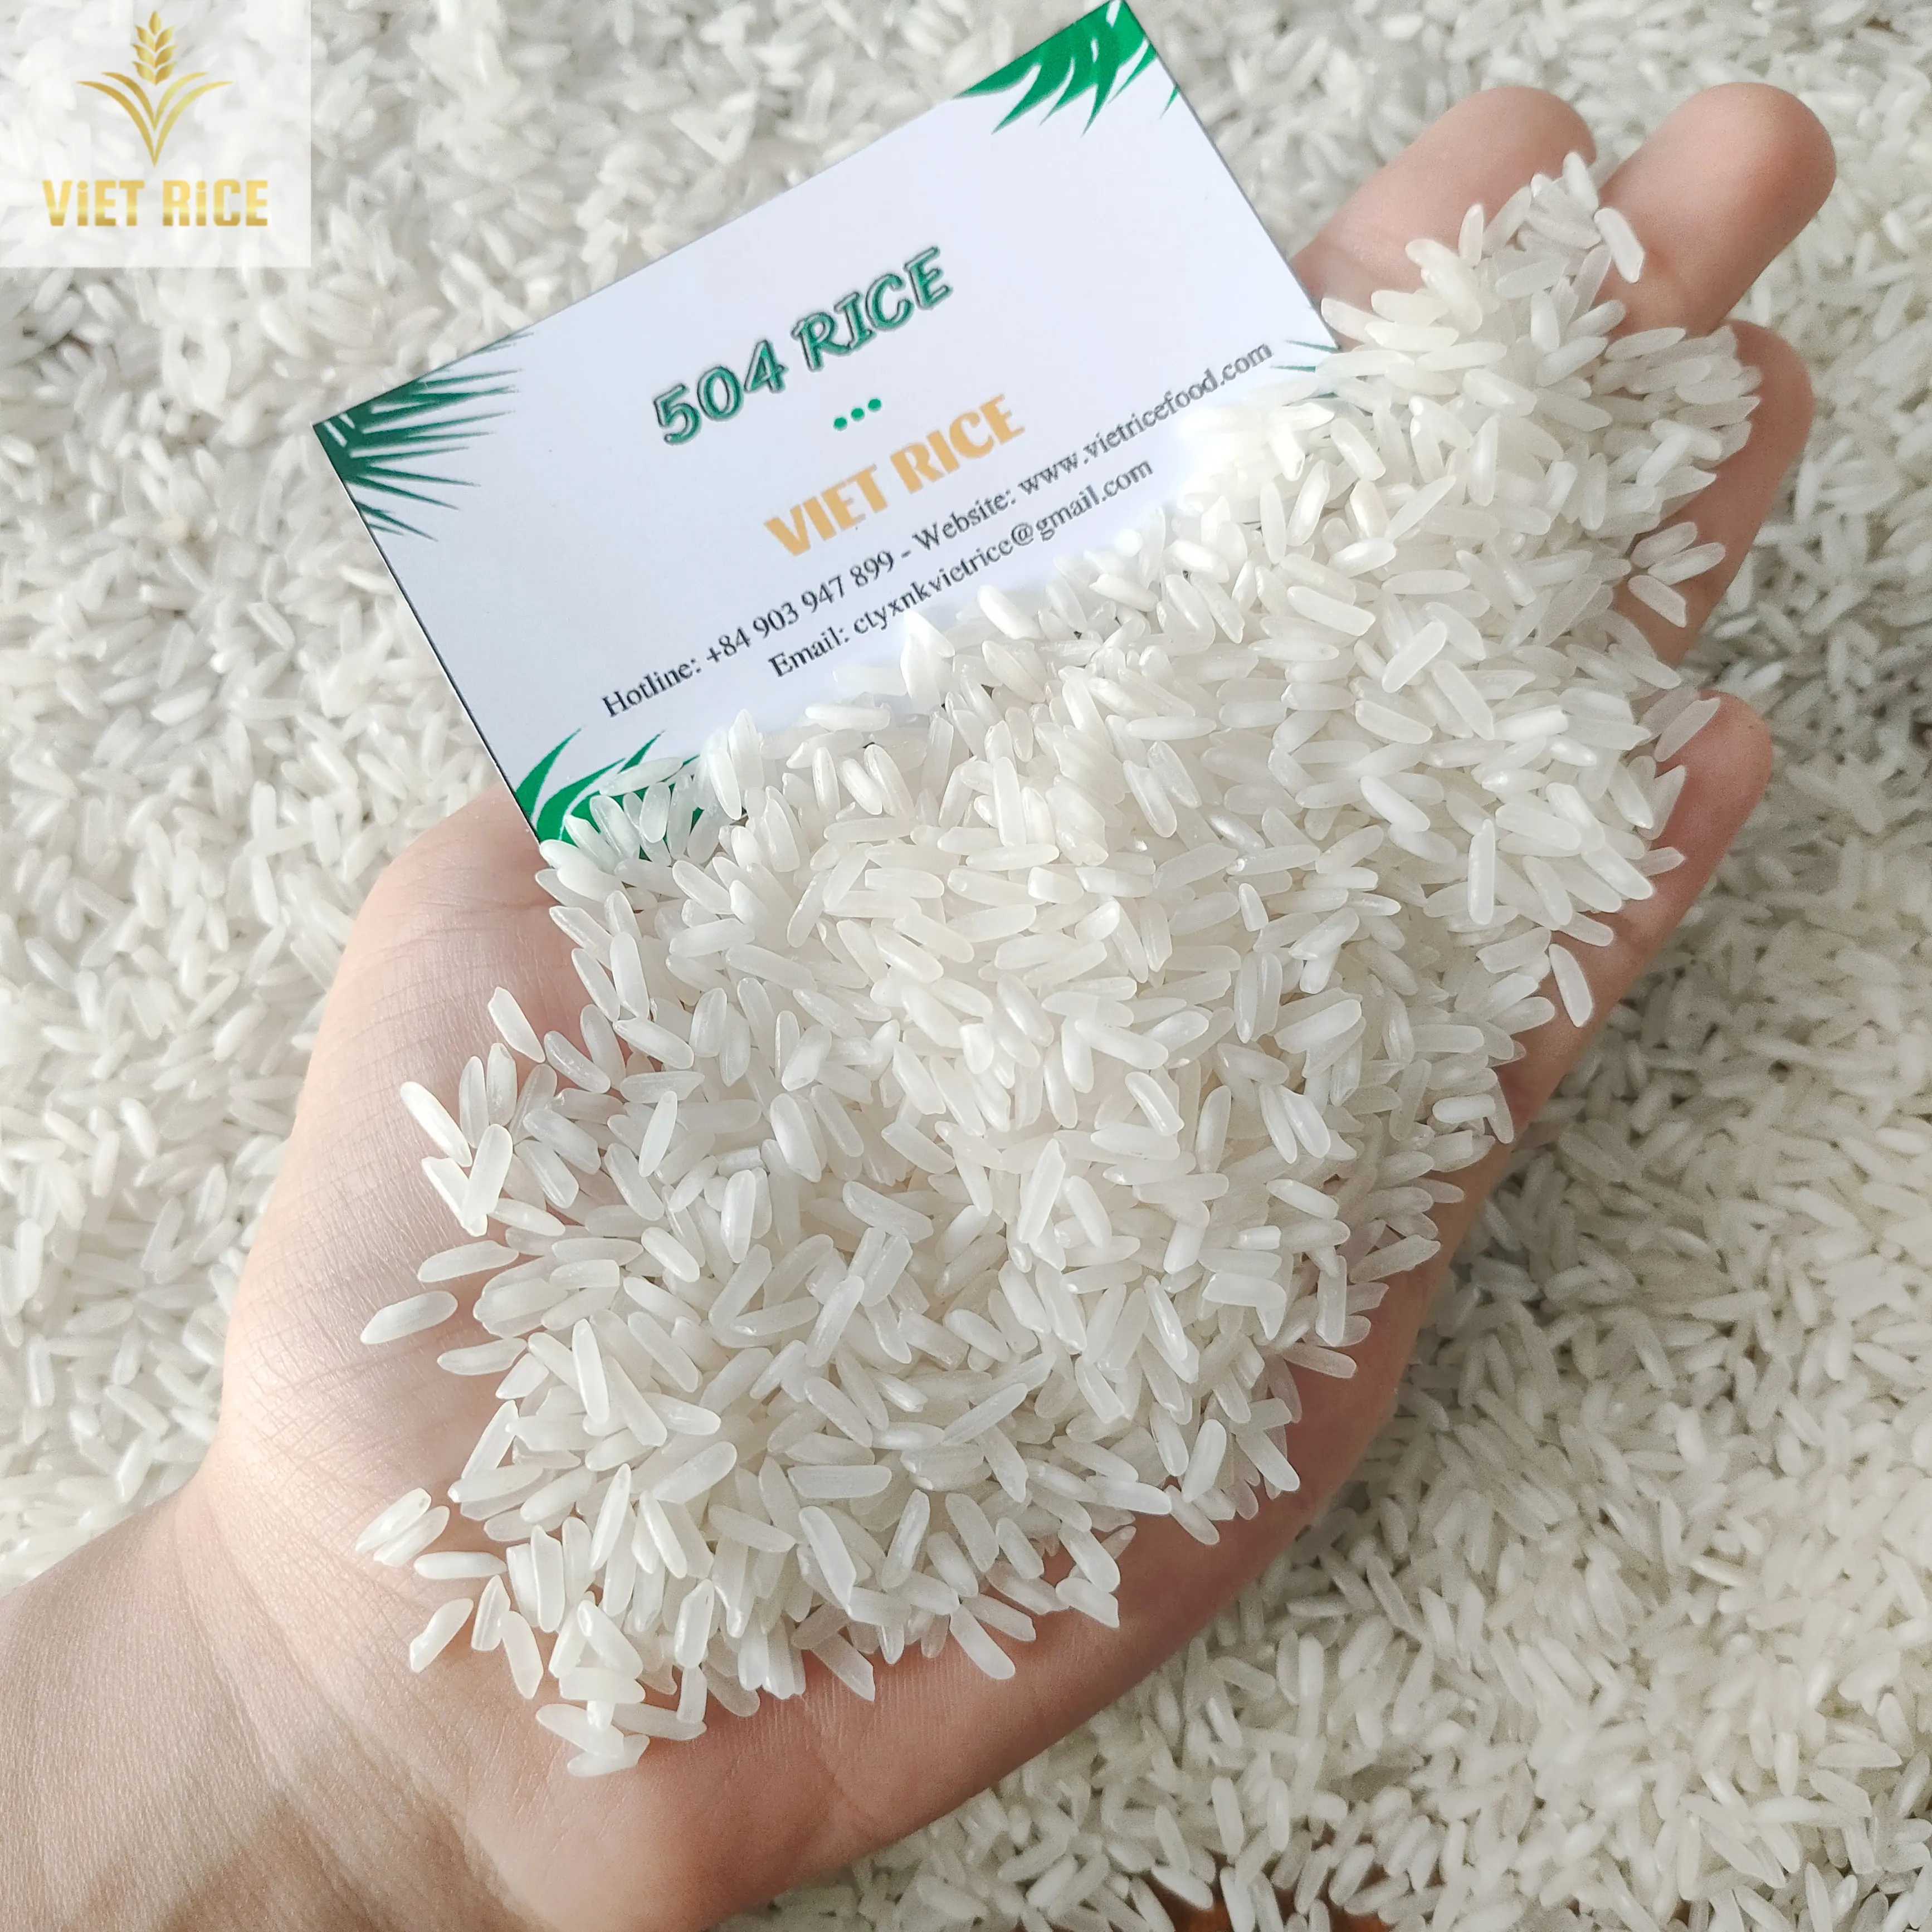 Riz vietnamien (Meilleur fournisseur, 504 RIZ) Au niveau national, le riz blanc de qualité et de quantité supérieures est vendu à l'échelle internationale